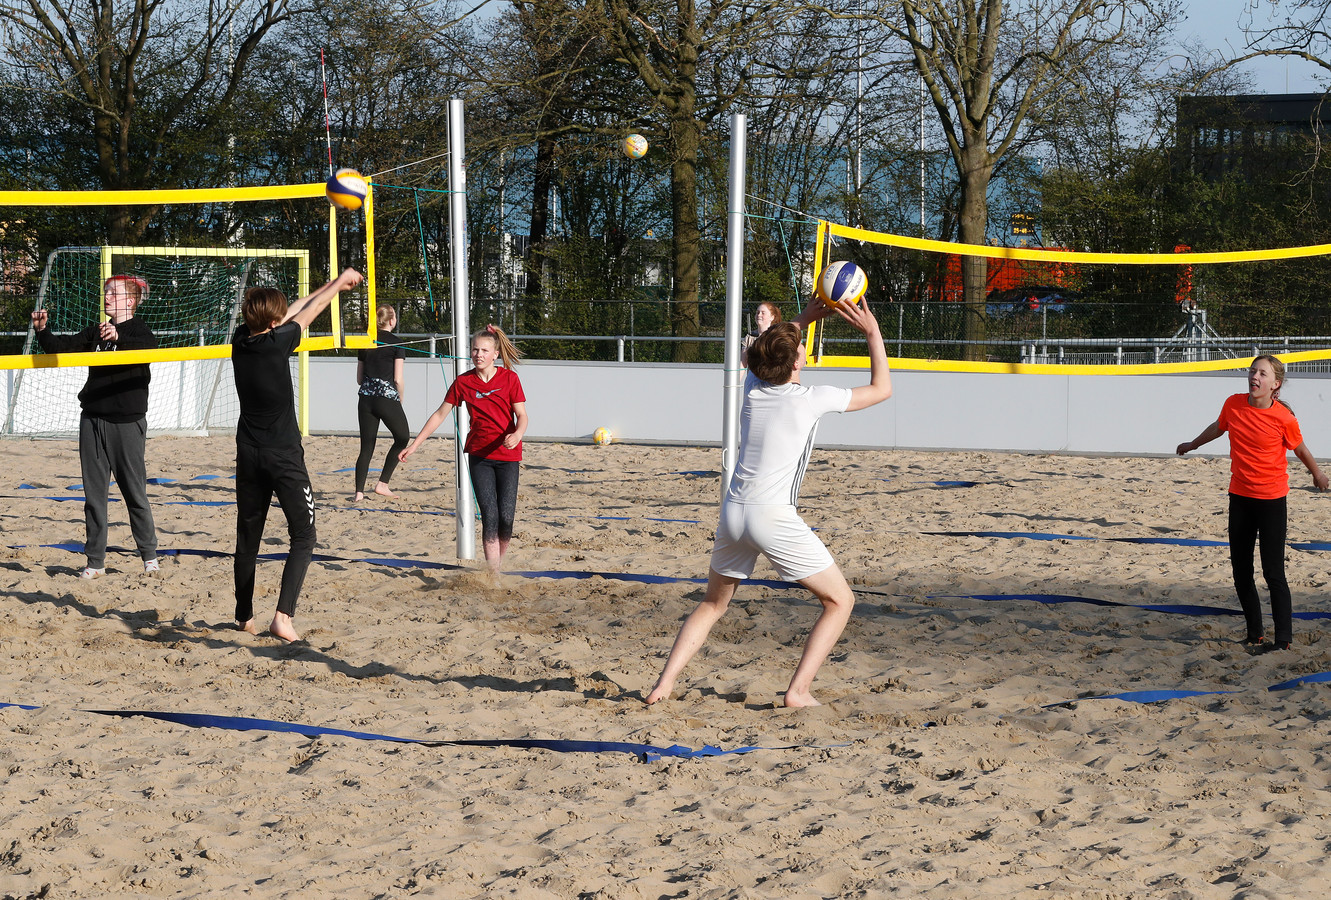 Het zand biedt uitkomst voor deze volleyballers.